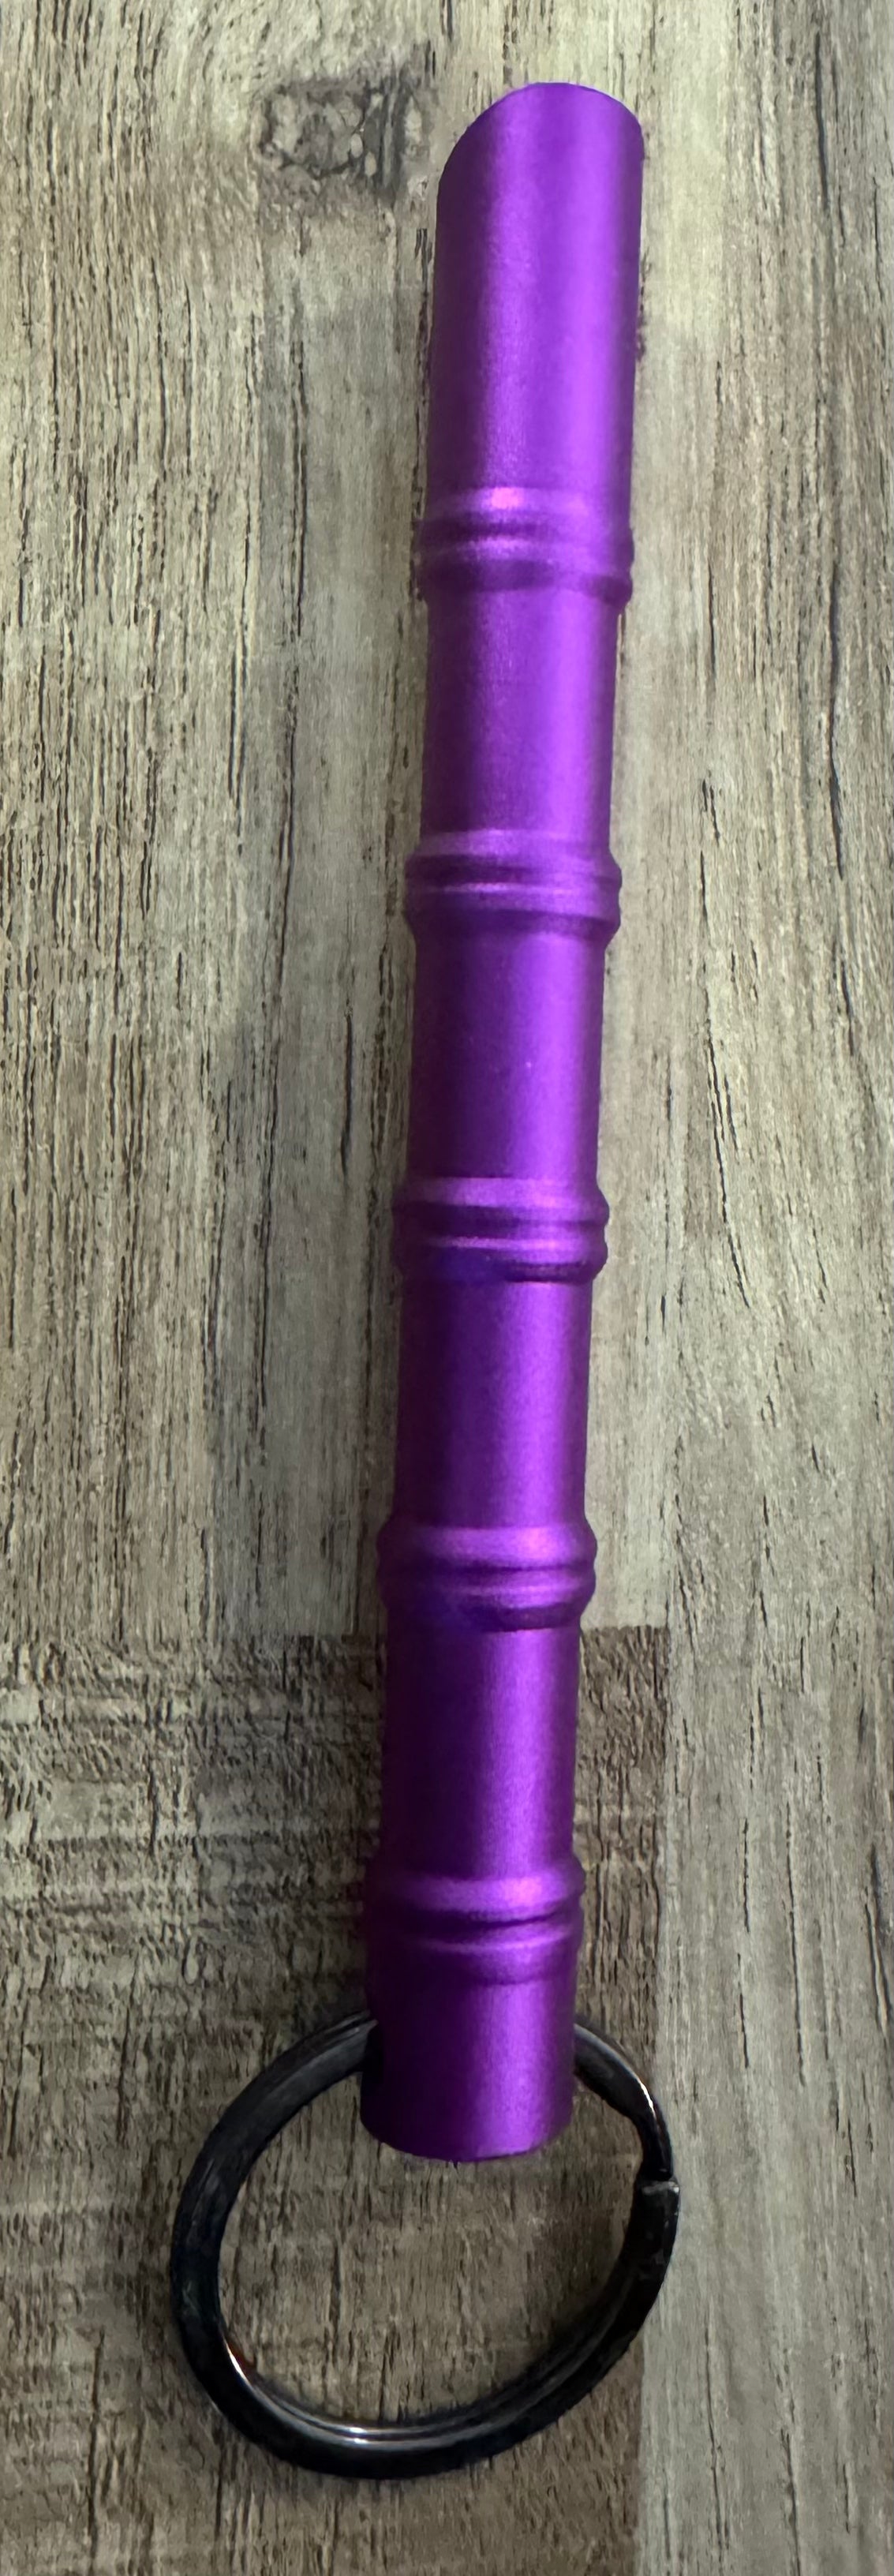 Purple Kubaton With whistle